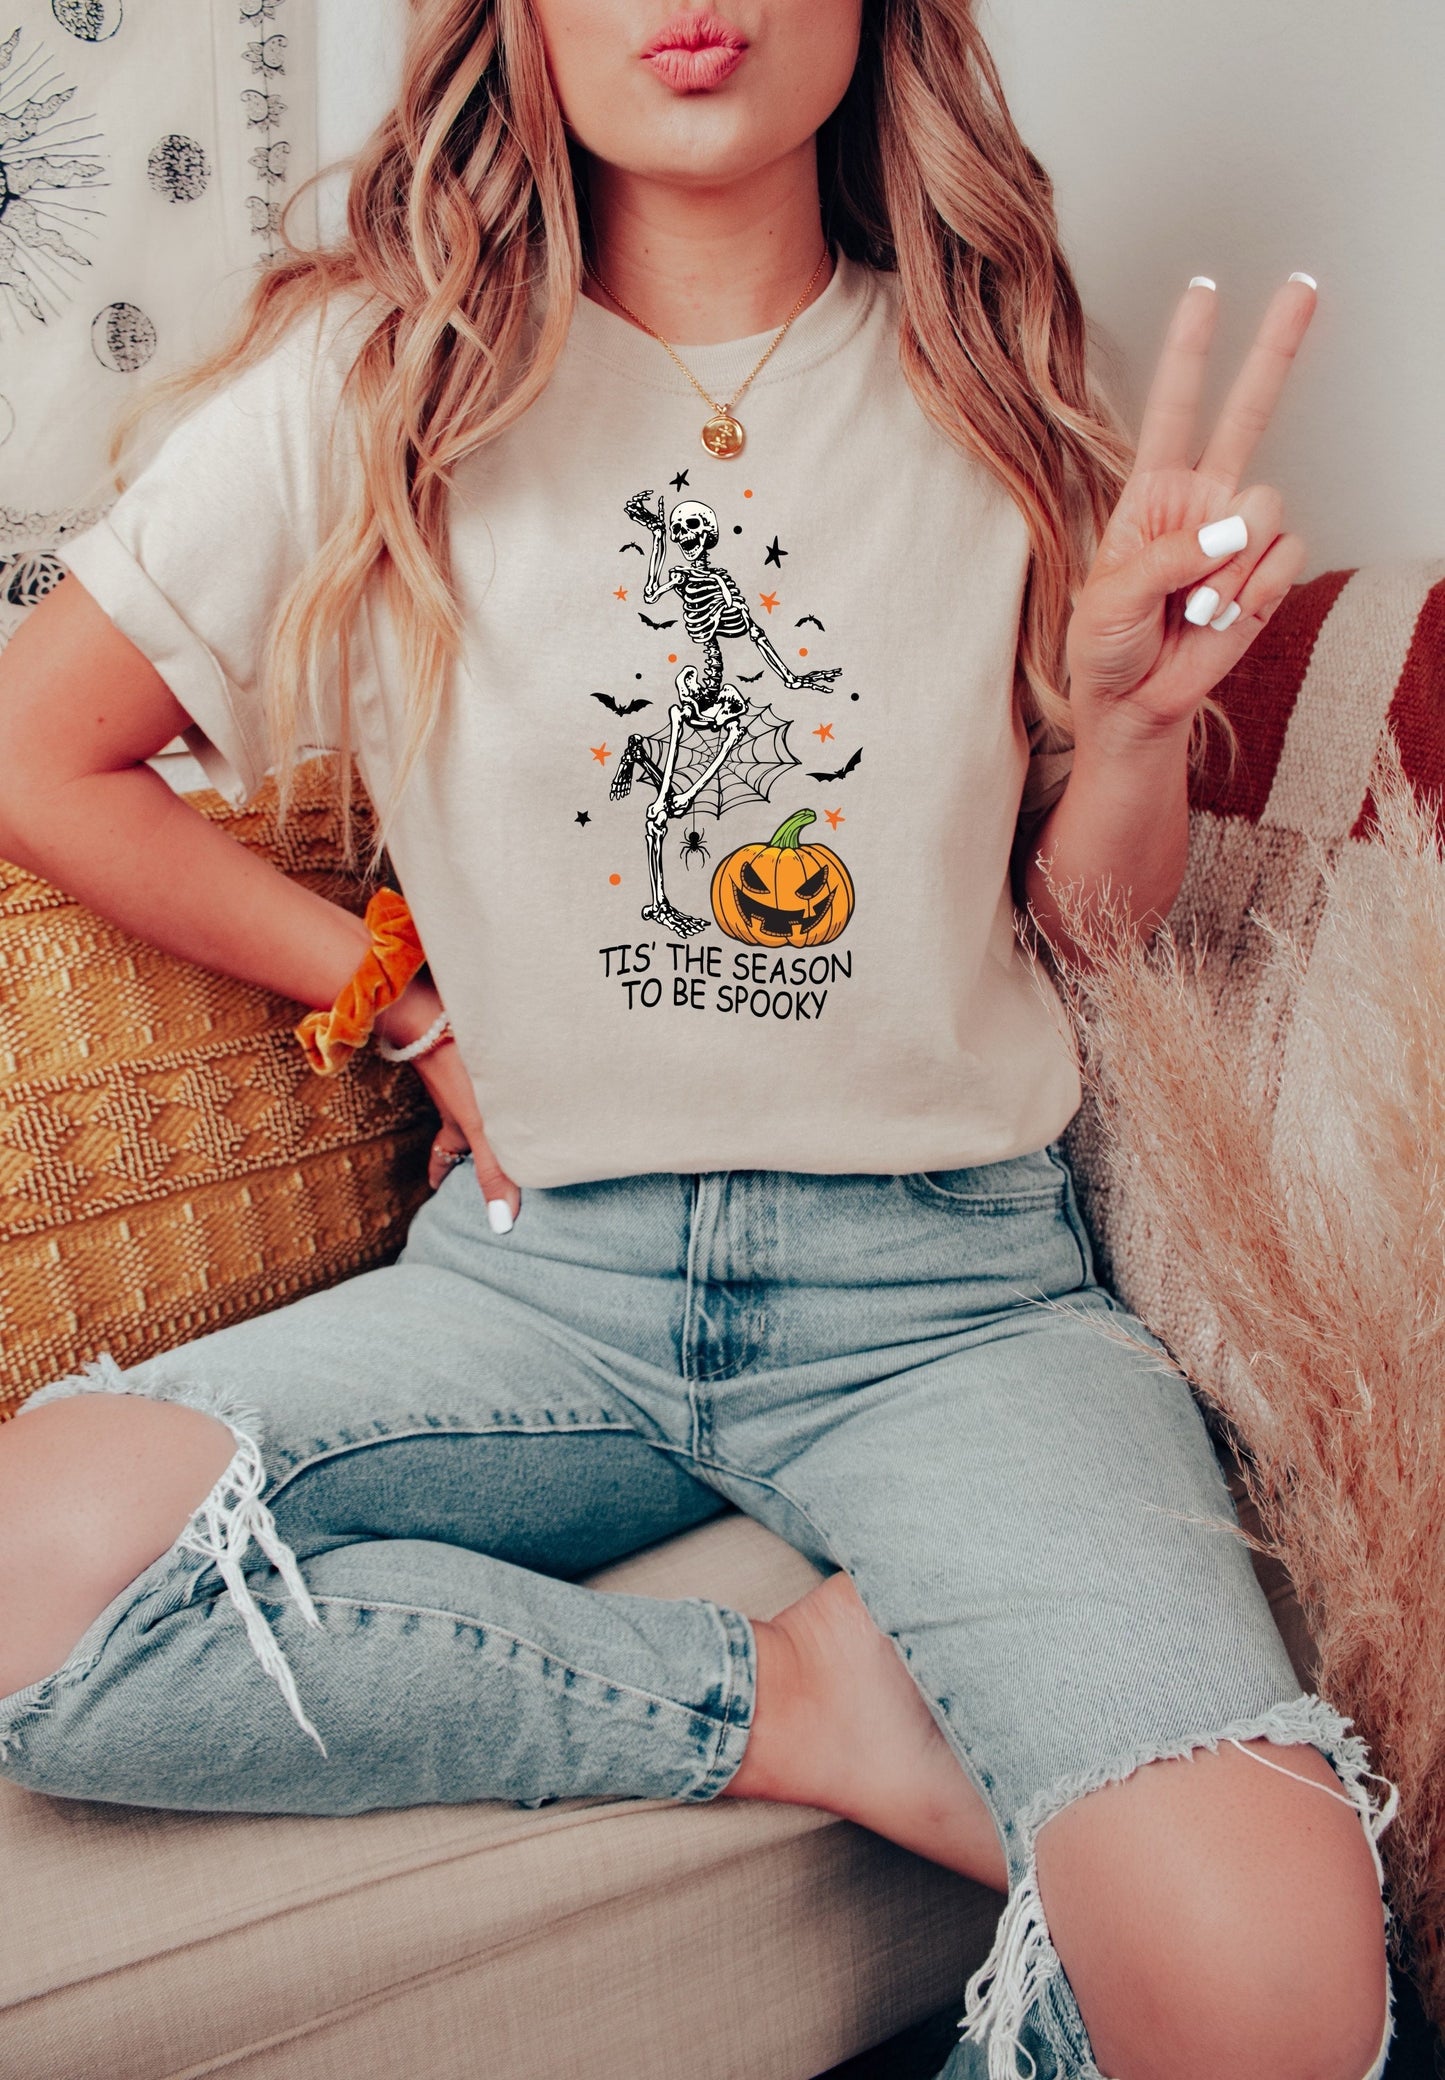 Tis' the Season to Be Spooky Skeleton Shirt - Halloween Shirt